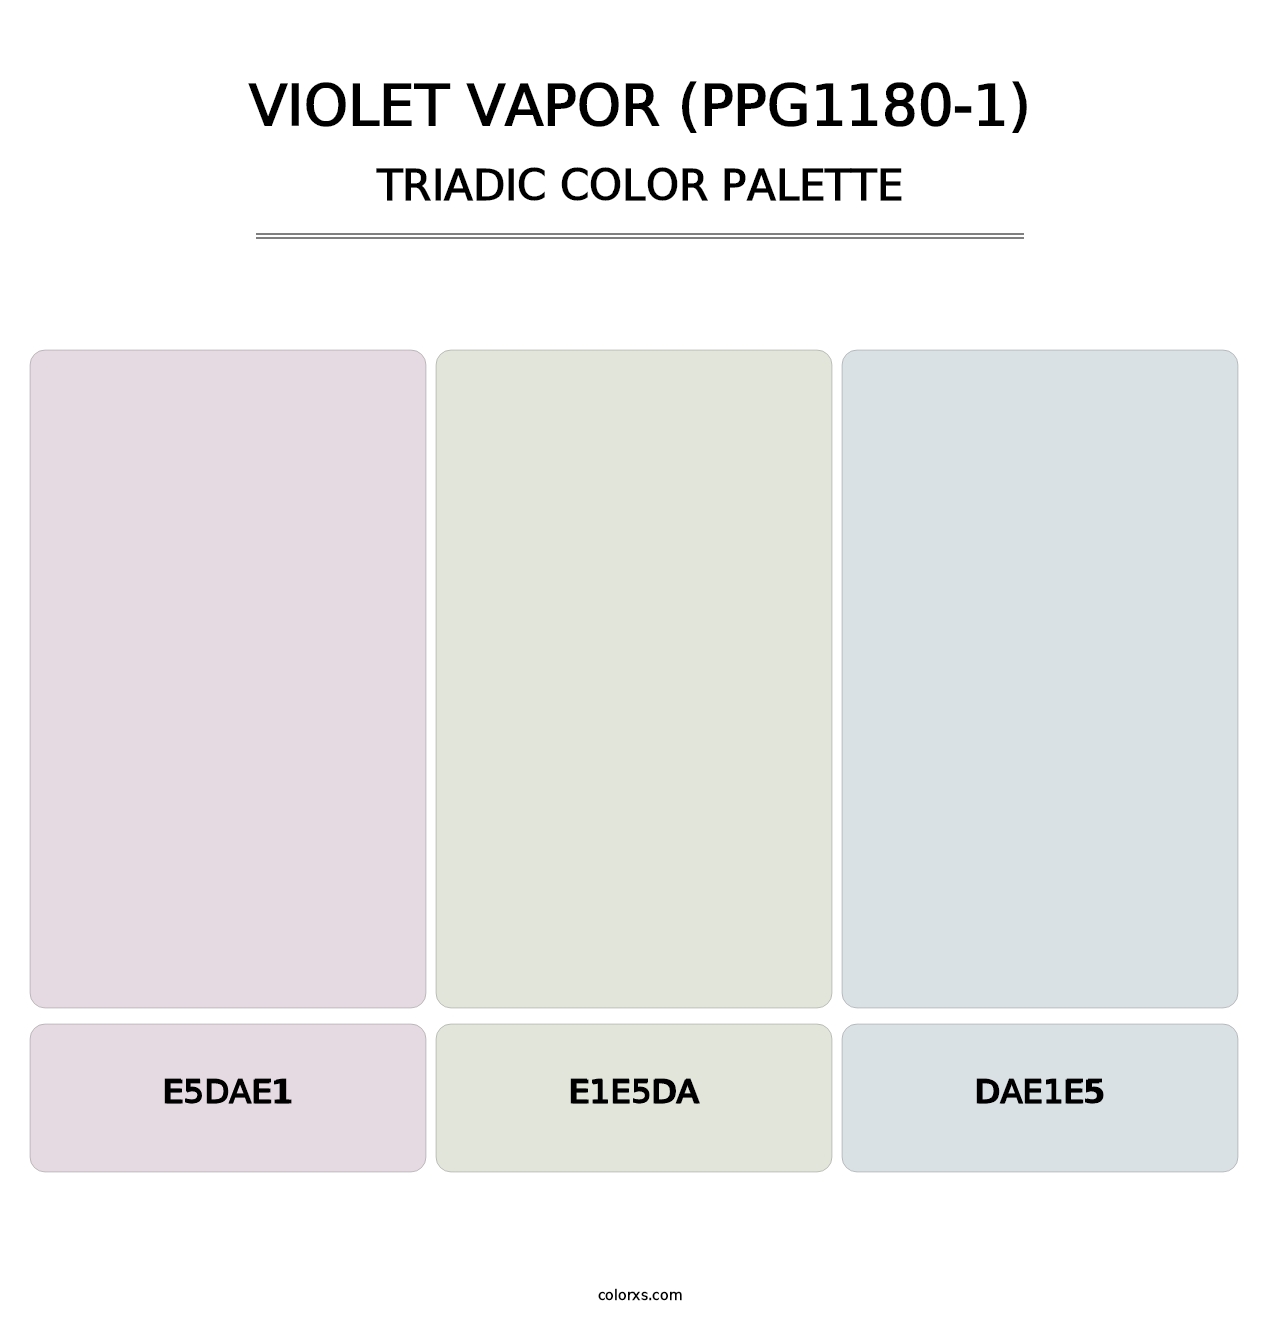 Violet Vapor (PPG1180-1) - Triadic Color Palette